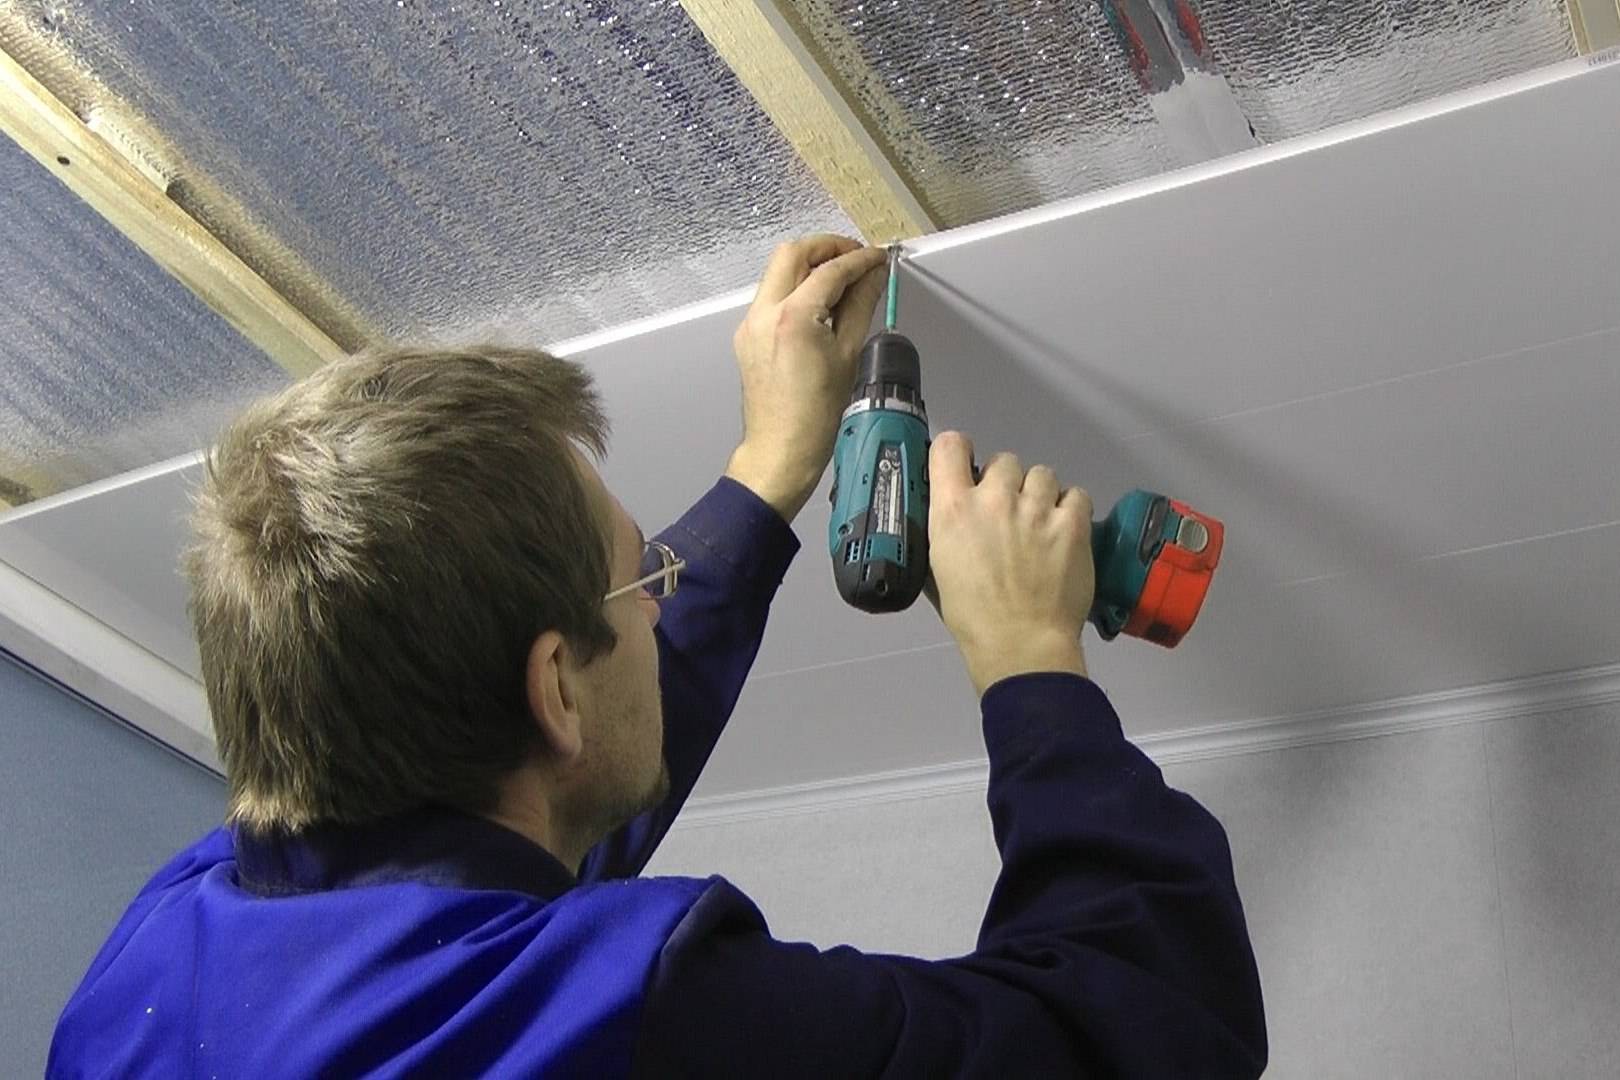 Как обшить потолок пластиковыми панелями: установка и отделка навесной, подвесной системы своими руками + видео как закрепить.